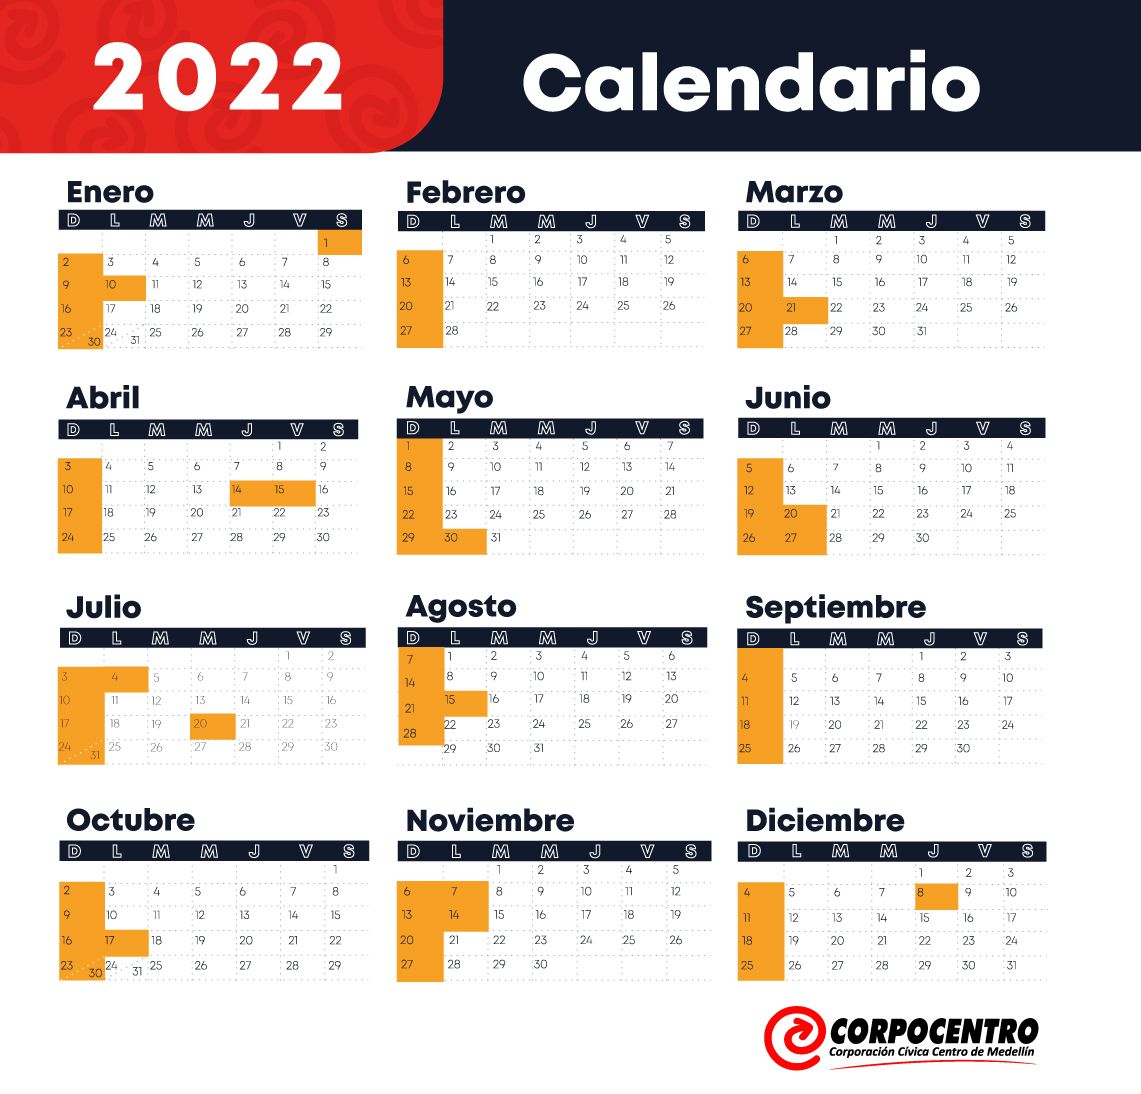 Colombia Calendar 2022 Calendario 2022 Con Días Festivos En Colombia - Centrópolis